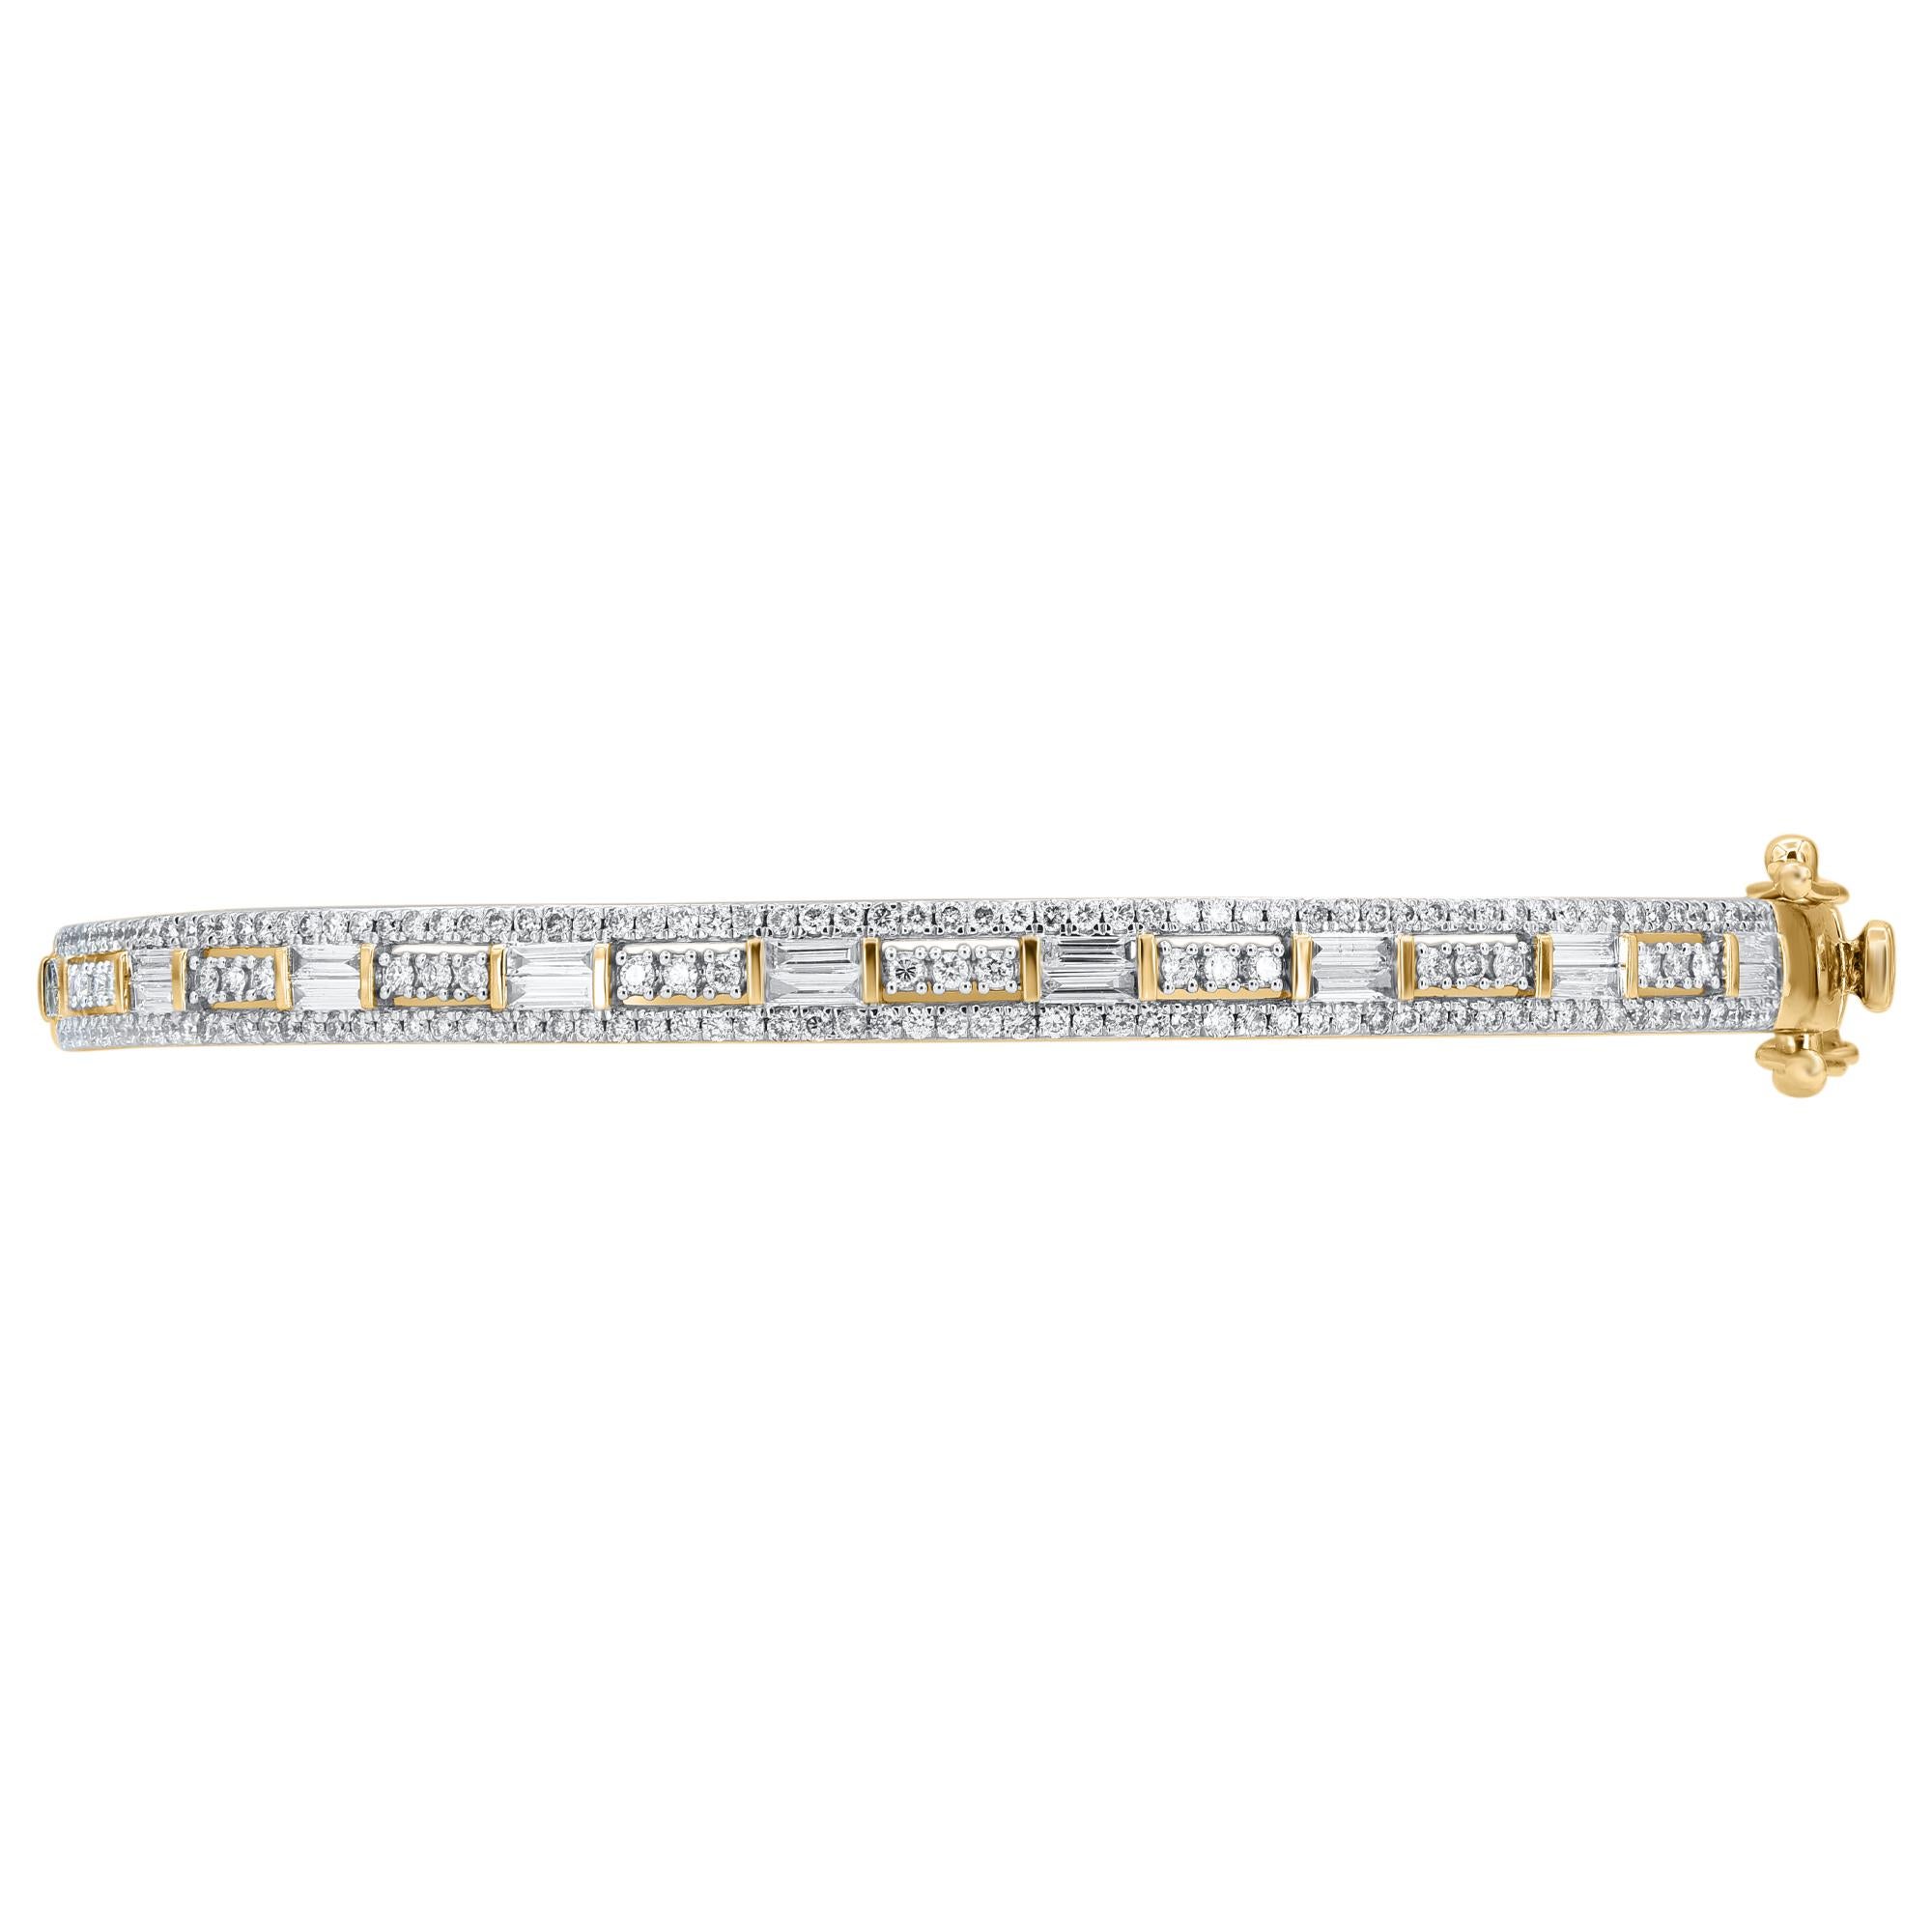 Ajoutez une touche d'éclat à n'importe quel look avec ce bracelet élégant en diamants. Ce bracelet scintillant présente 180 diamants naturels de taille Brilliante, Taille Unique et Baguette, sertis à l'emporte-pièce et en canal, en or jaune 14kt.